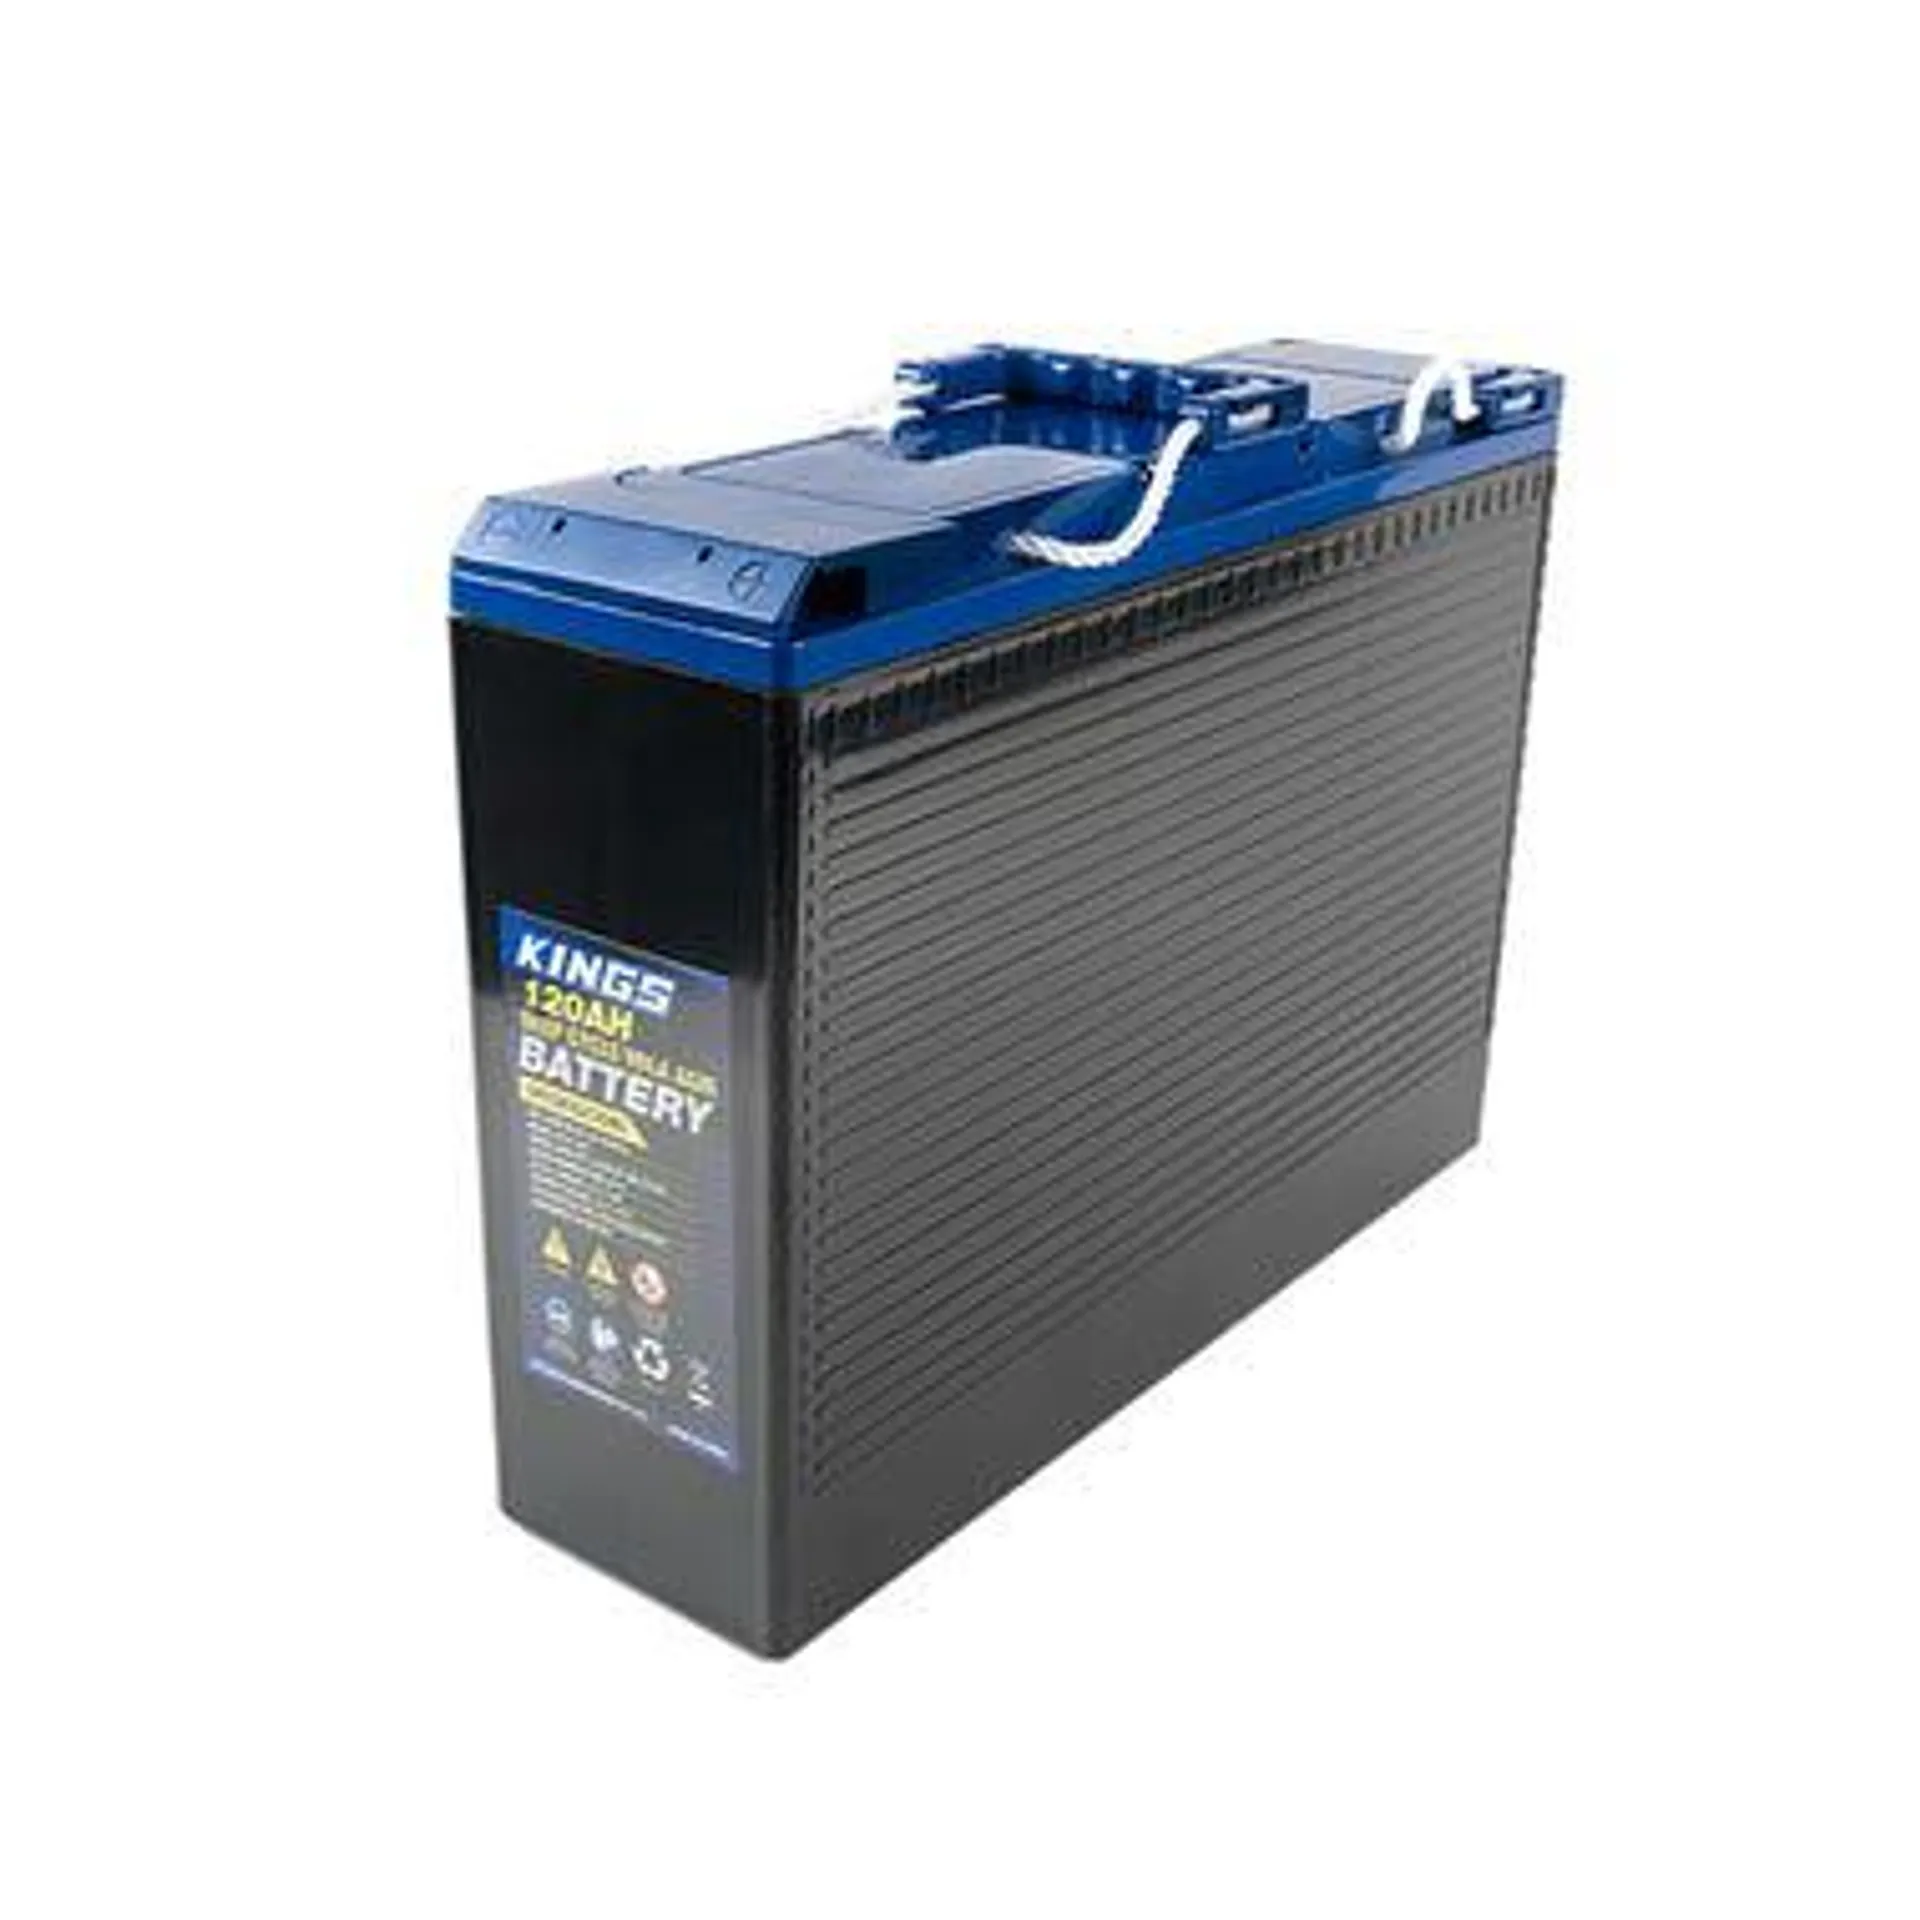 Kings 12V 120Ah Slimline AGM Battery | 5x Faster Recharging | Maintenance-Free